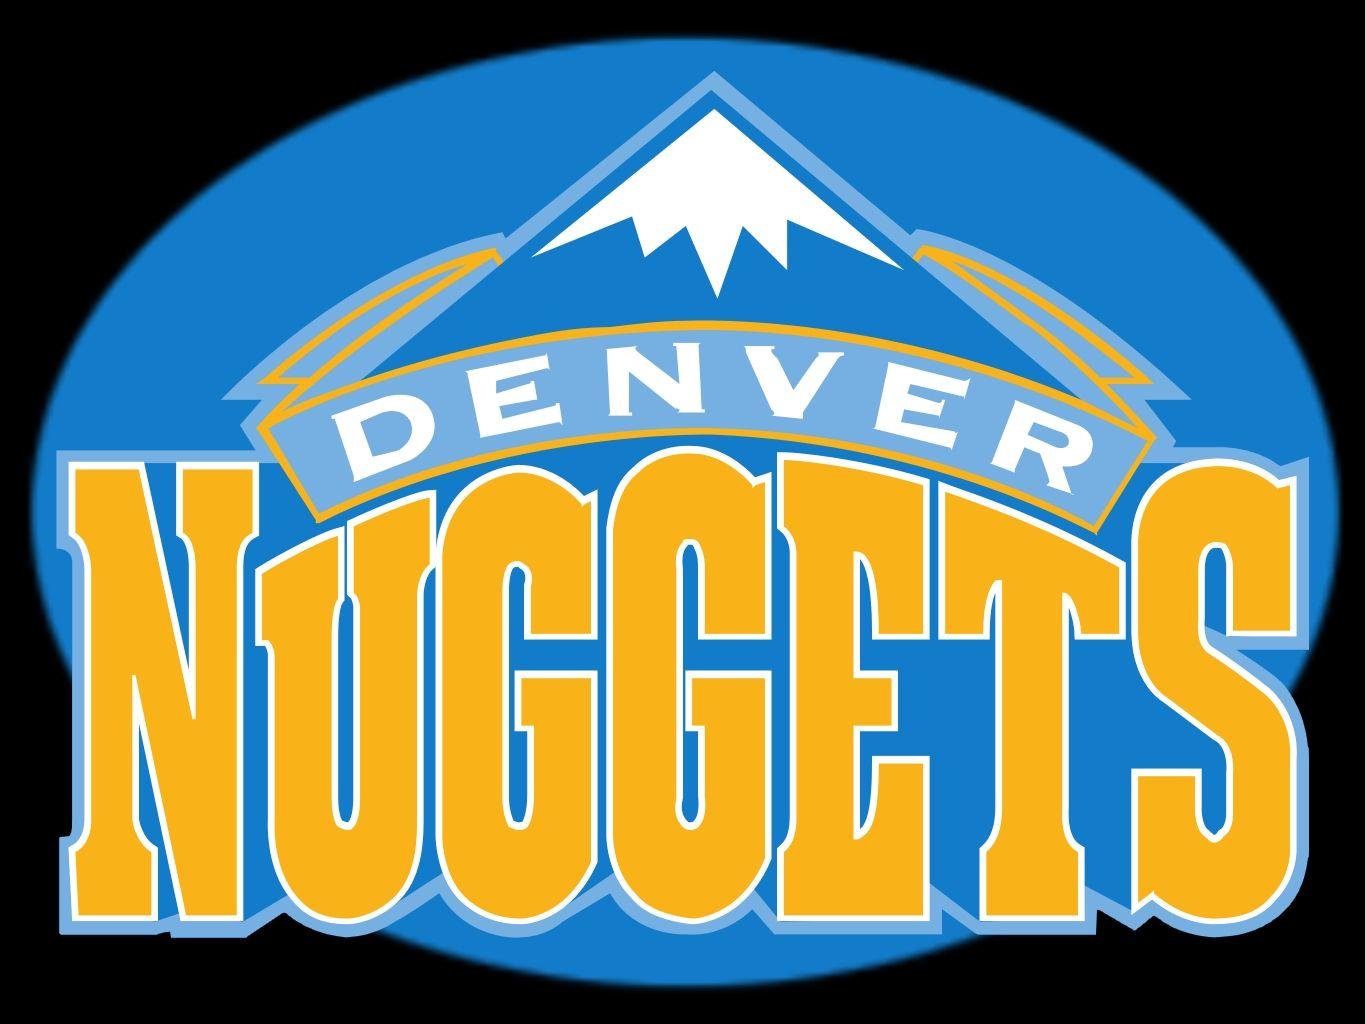 Denver Nuggets Wallpaper 6822408 Home Design 2017